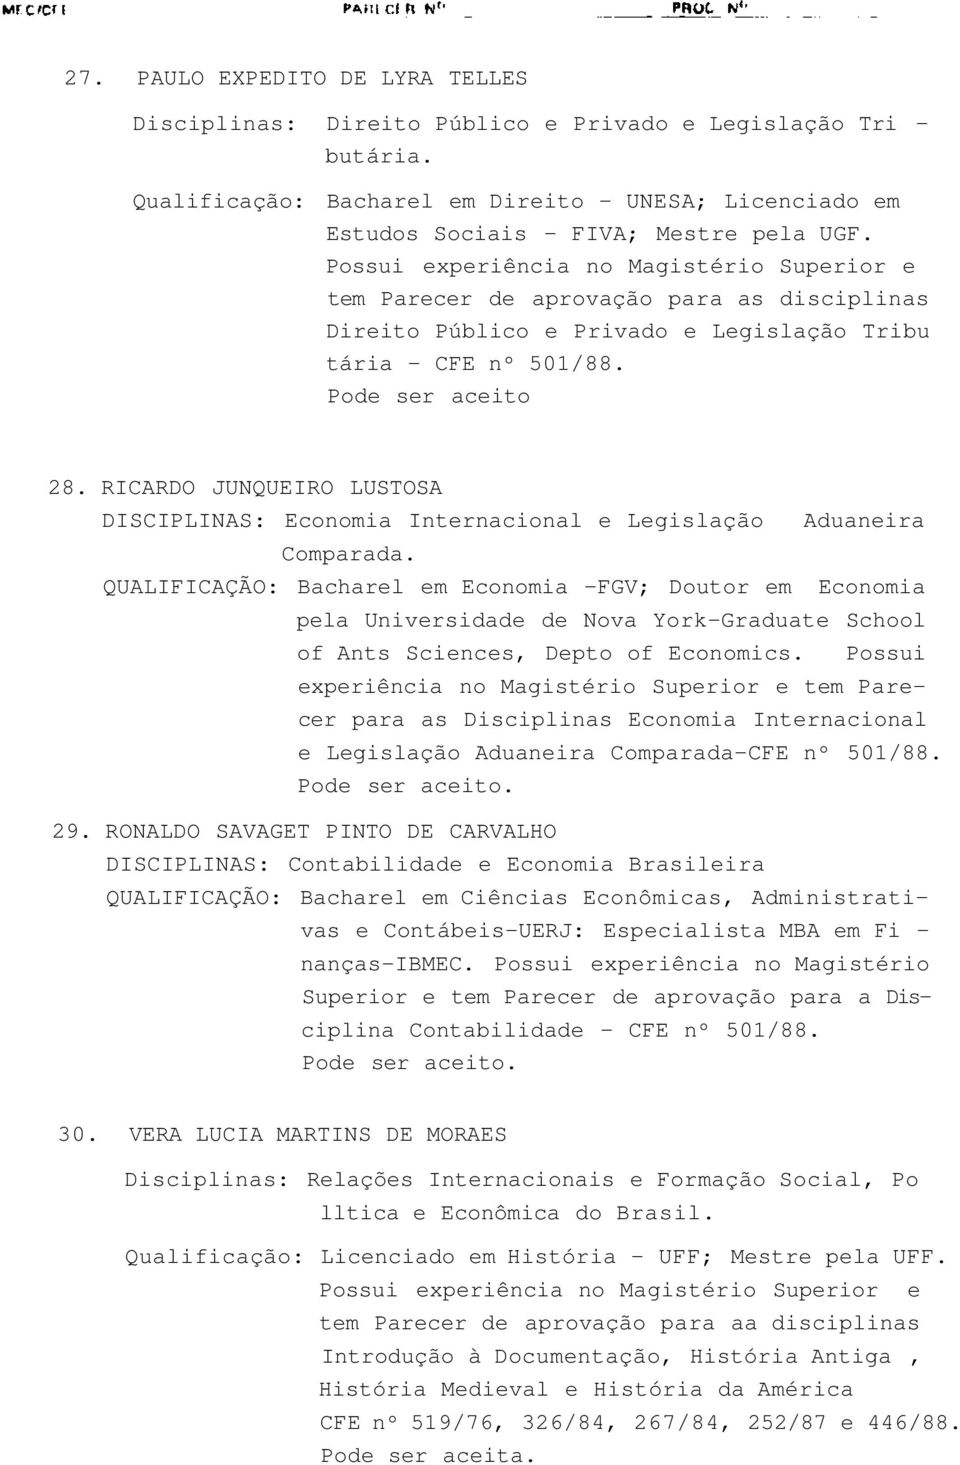 RICARDO JUNQUEIRO LUSTOSA DISCIPLINAS: Economia Internacional e Legislação Comparada.